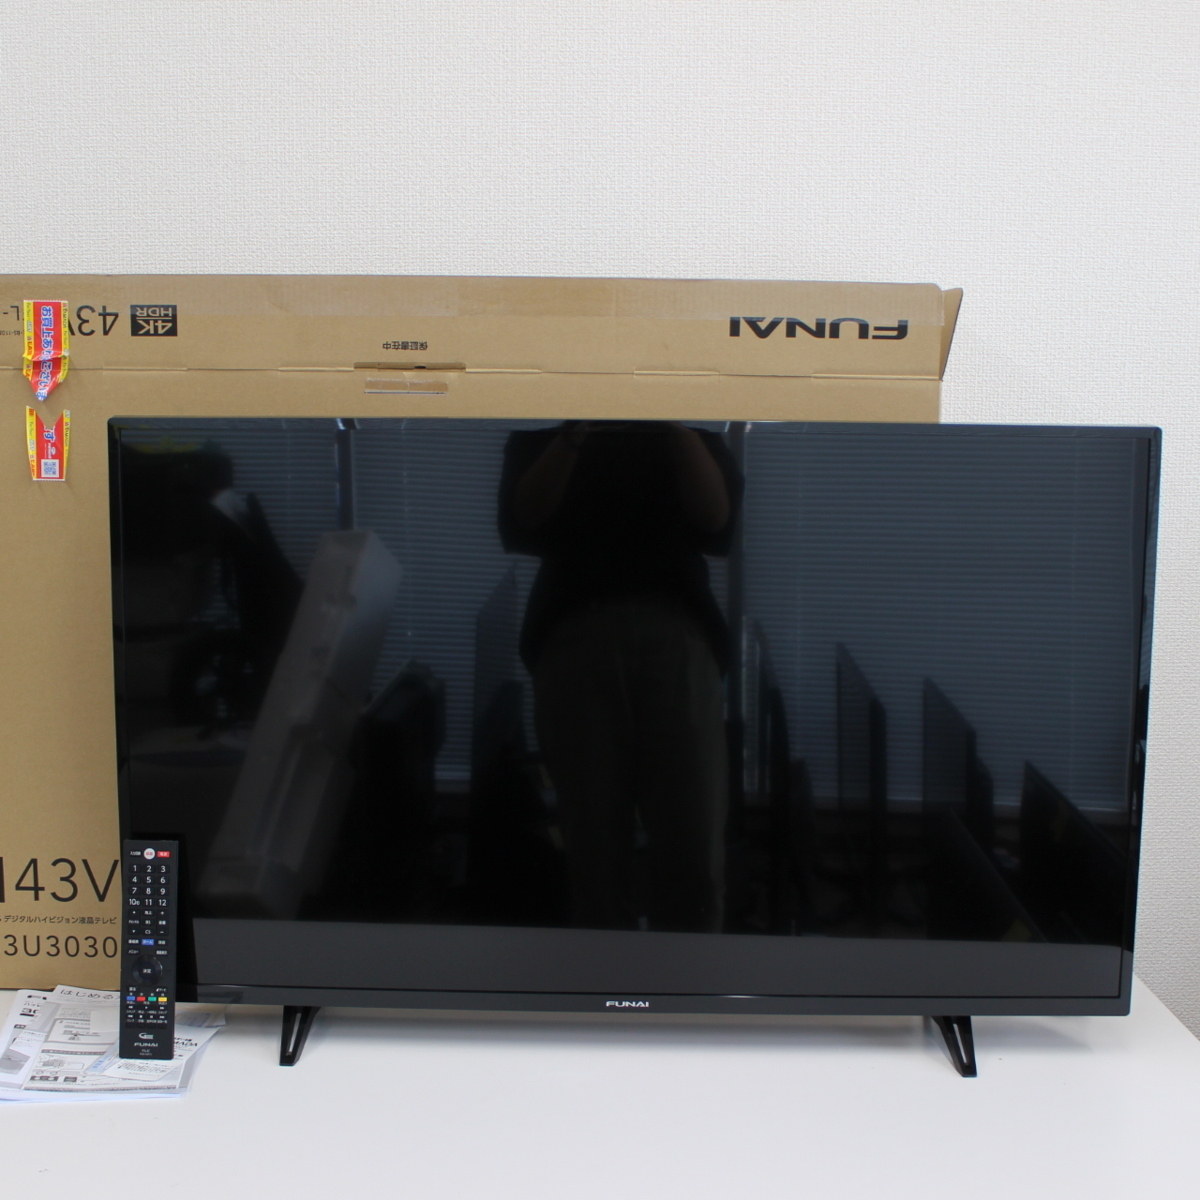 東京都品川区にて FUNAI 液晶テレビ FL-43U3030 2020年製 を出張買取させて頂きました。